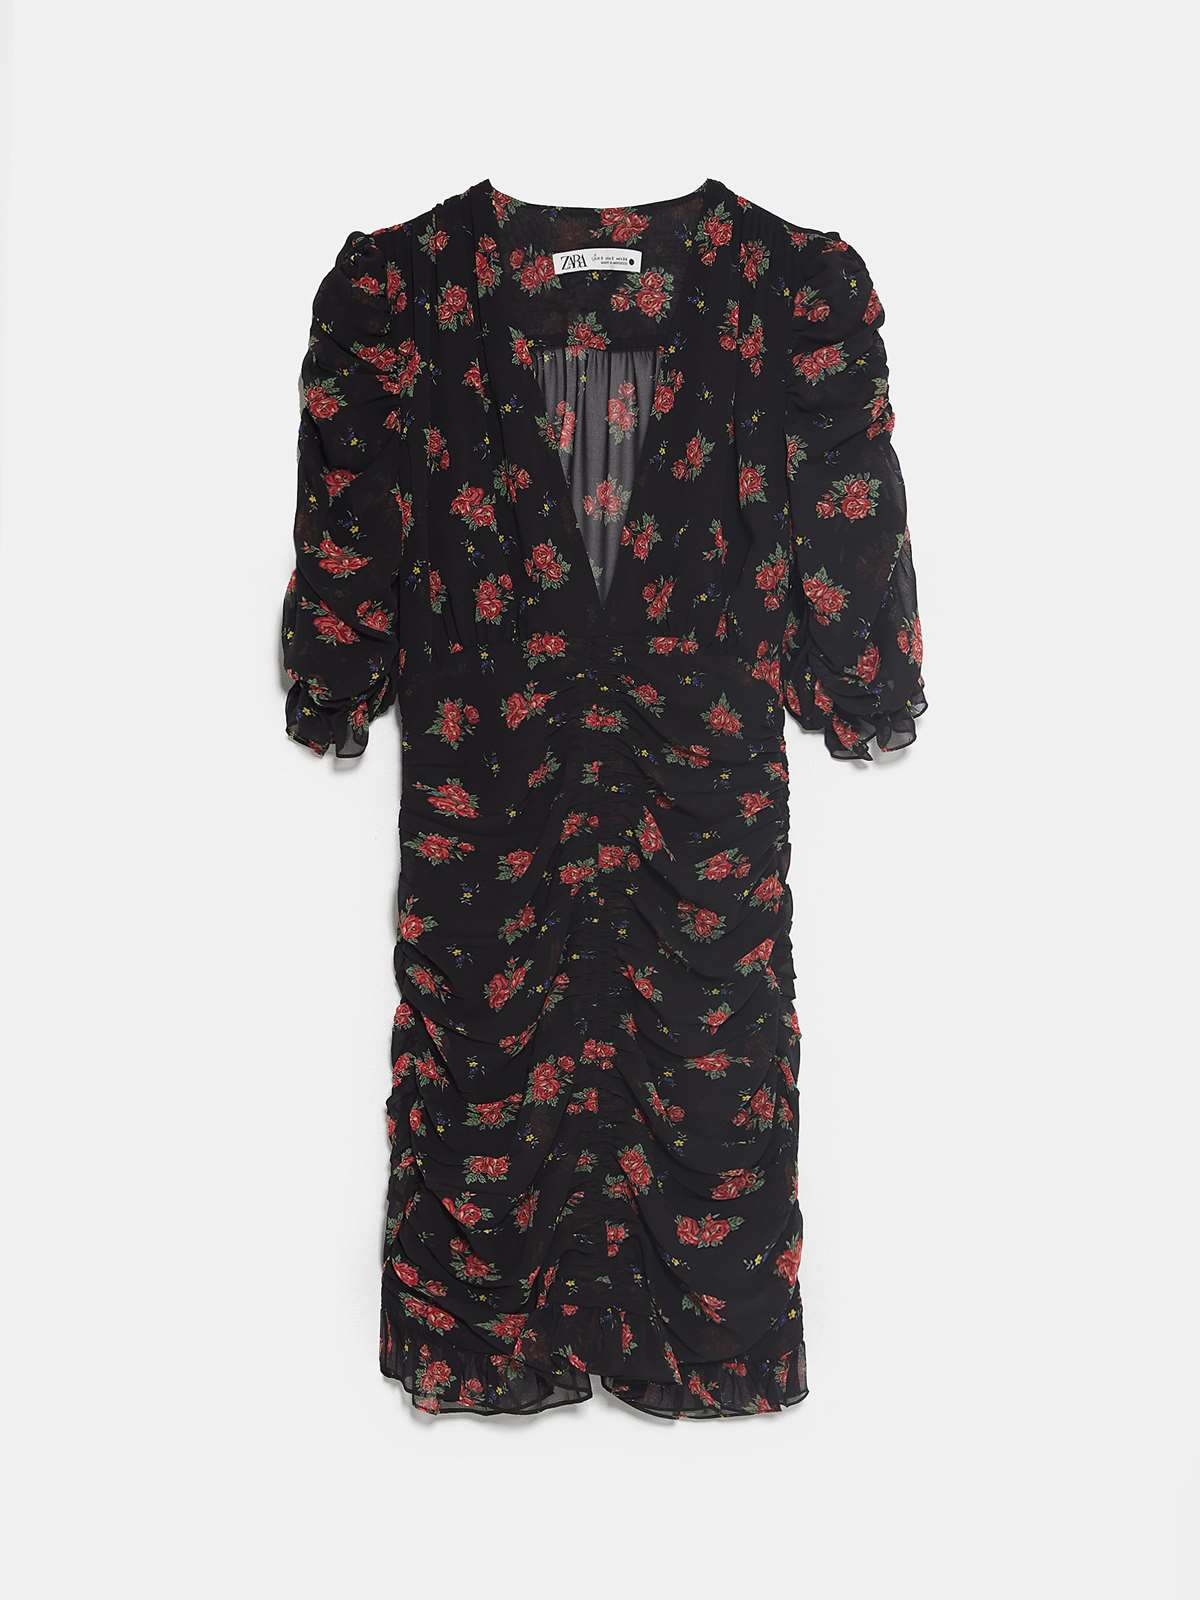 10-vestido-rebajas-zara. Rebajas de Zara: minivestido floral con fruncidos